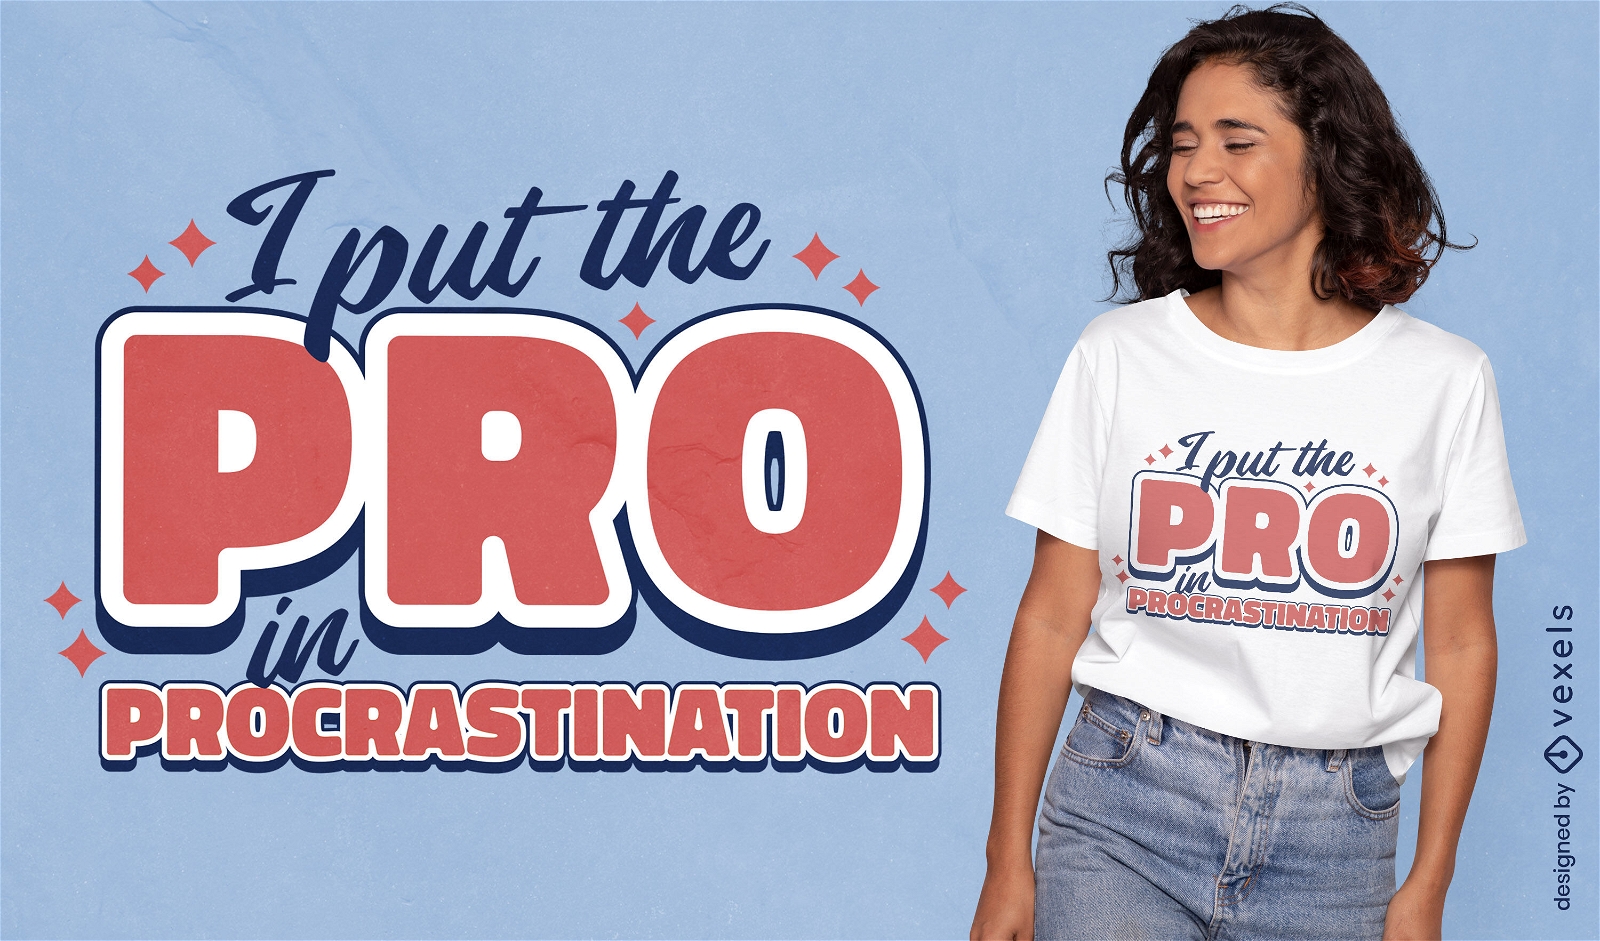 Procrastination quote t-shirt design 